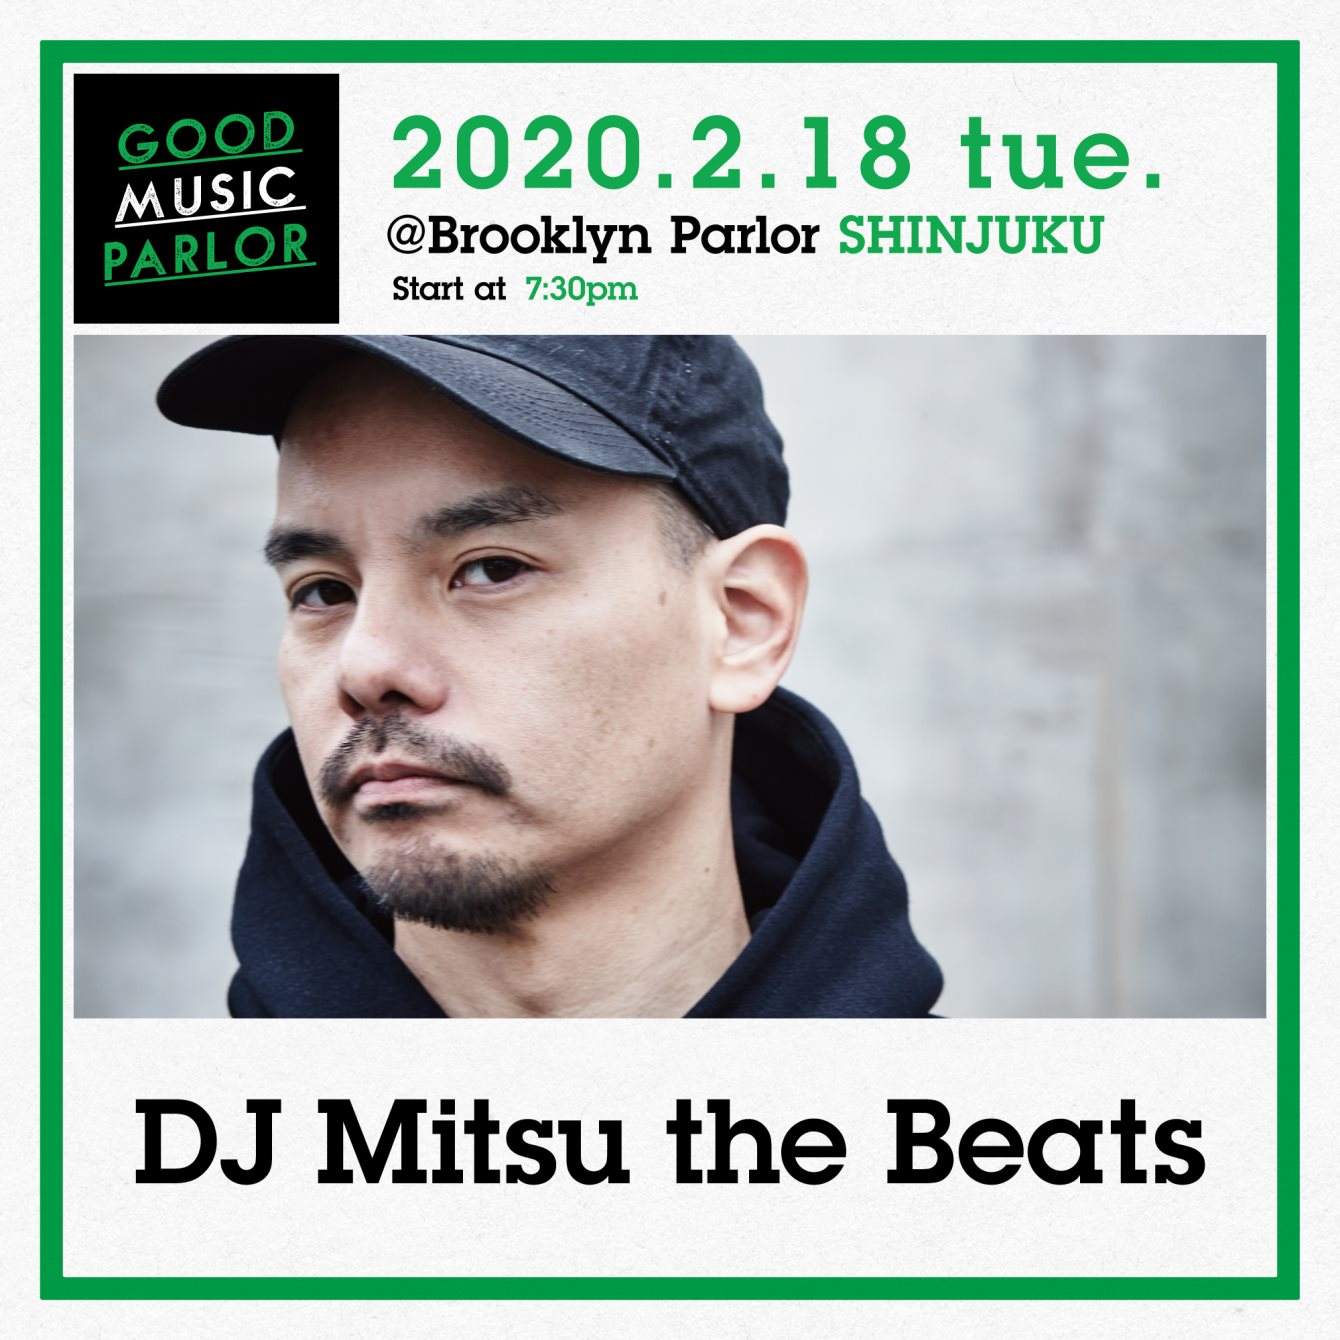 DJ Mitsu the Beats at Good Music Parlor - フライヤー表